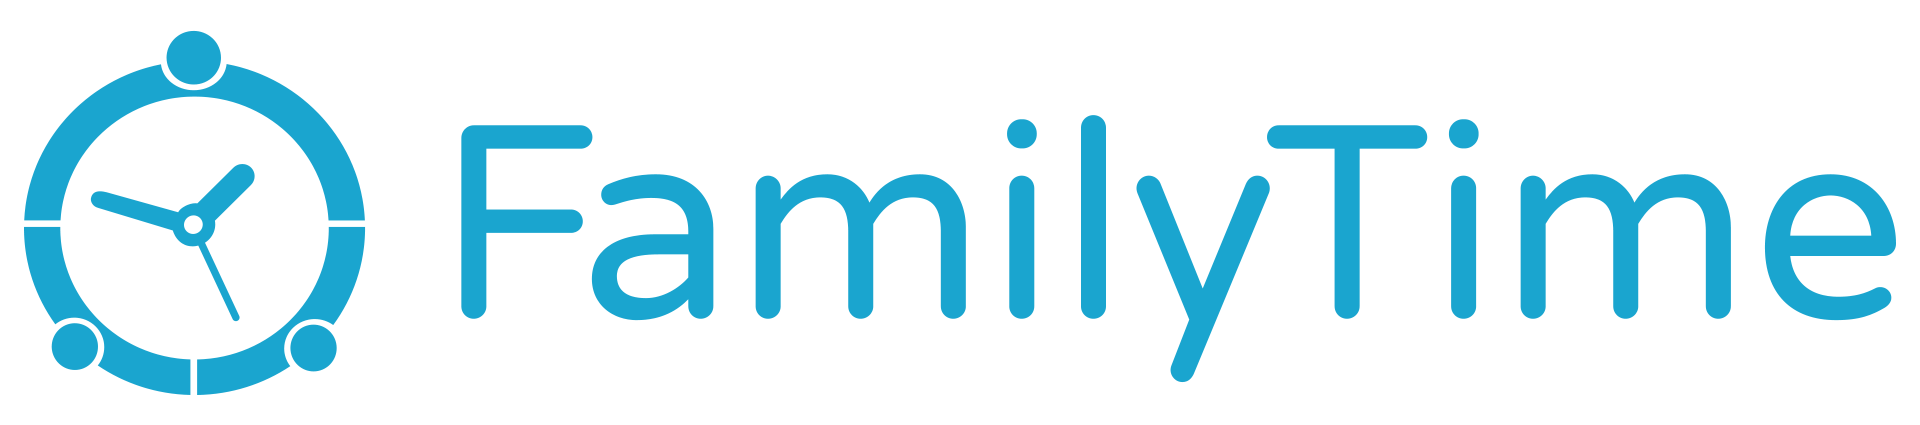 familytime-logo